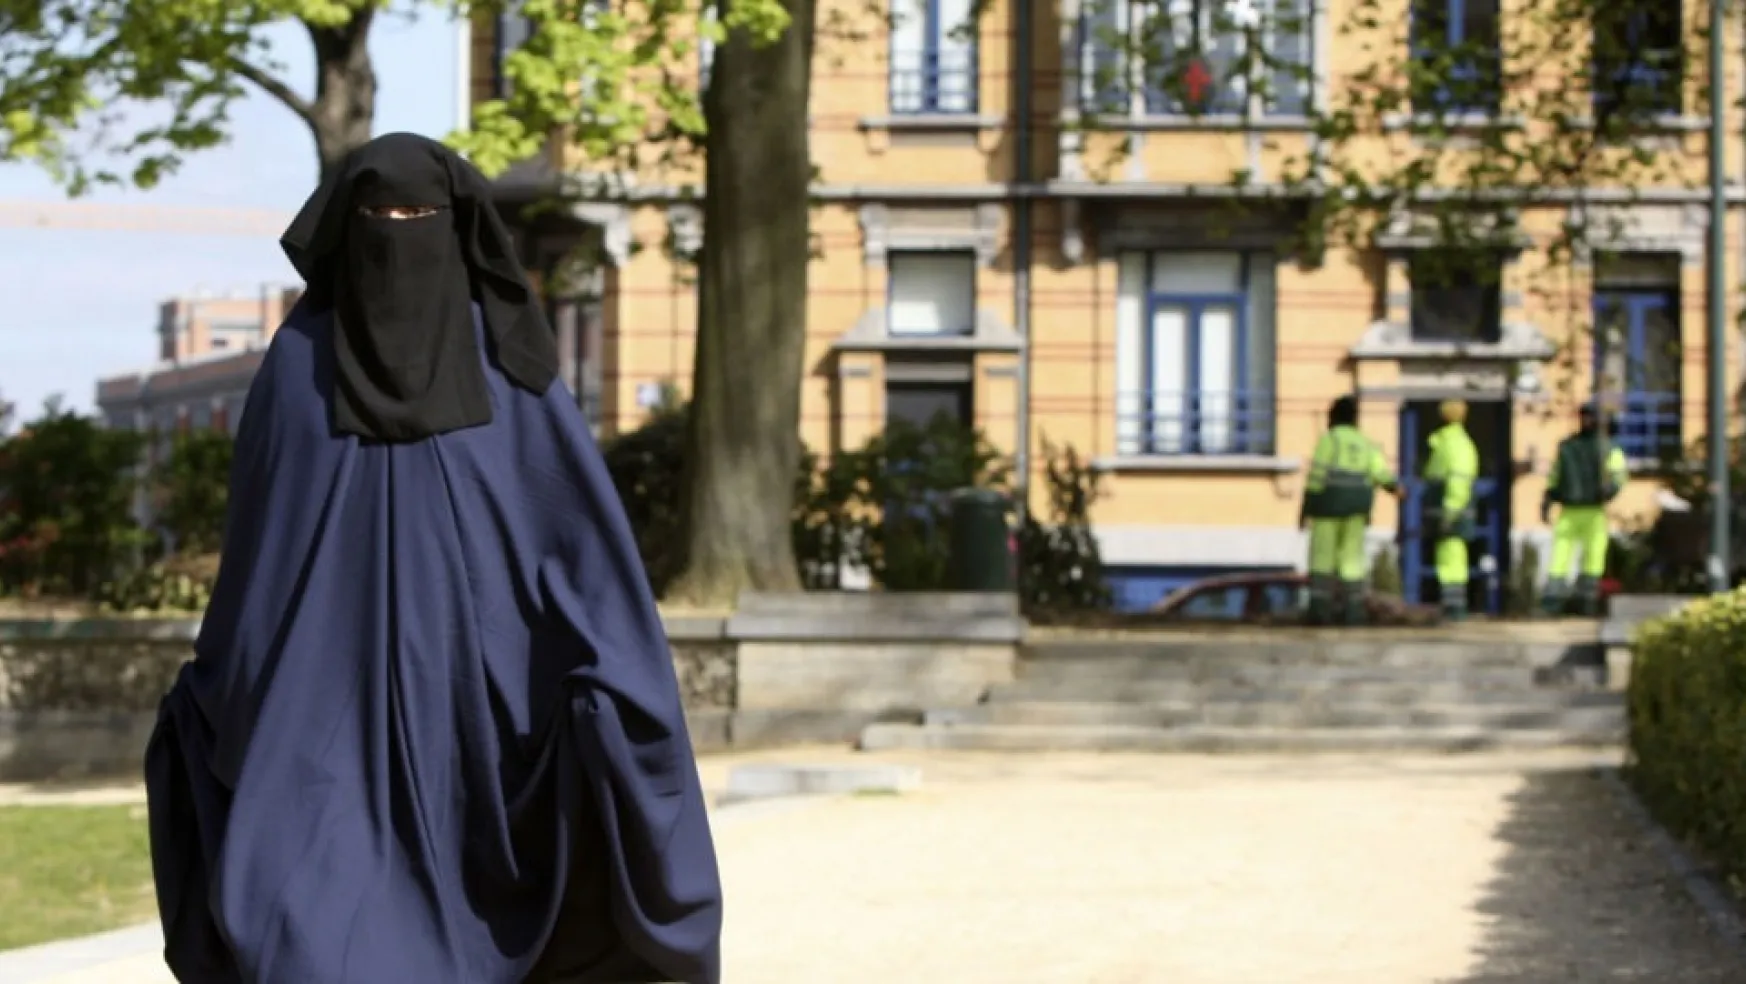 Hollanda'da Burka Yasağı Yürürlükte